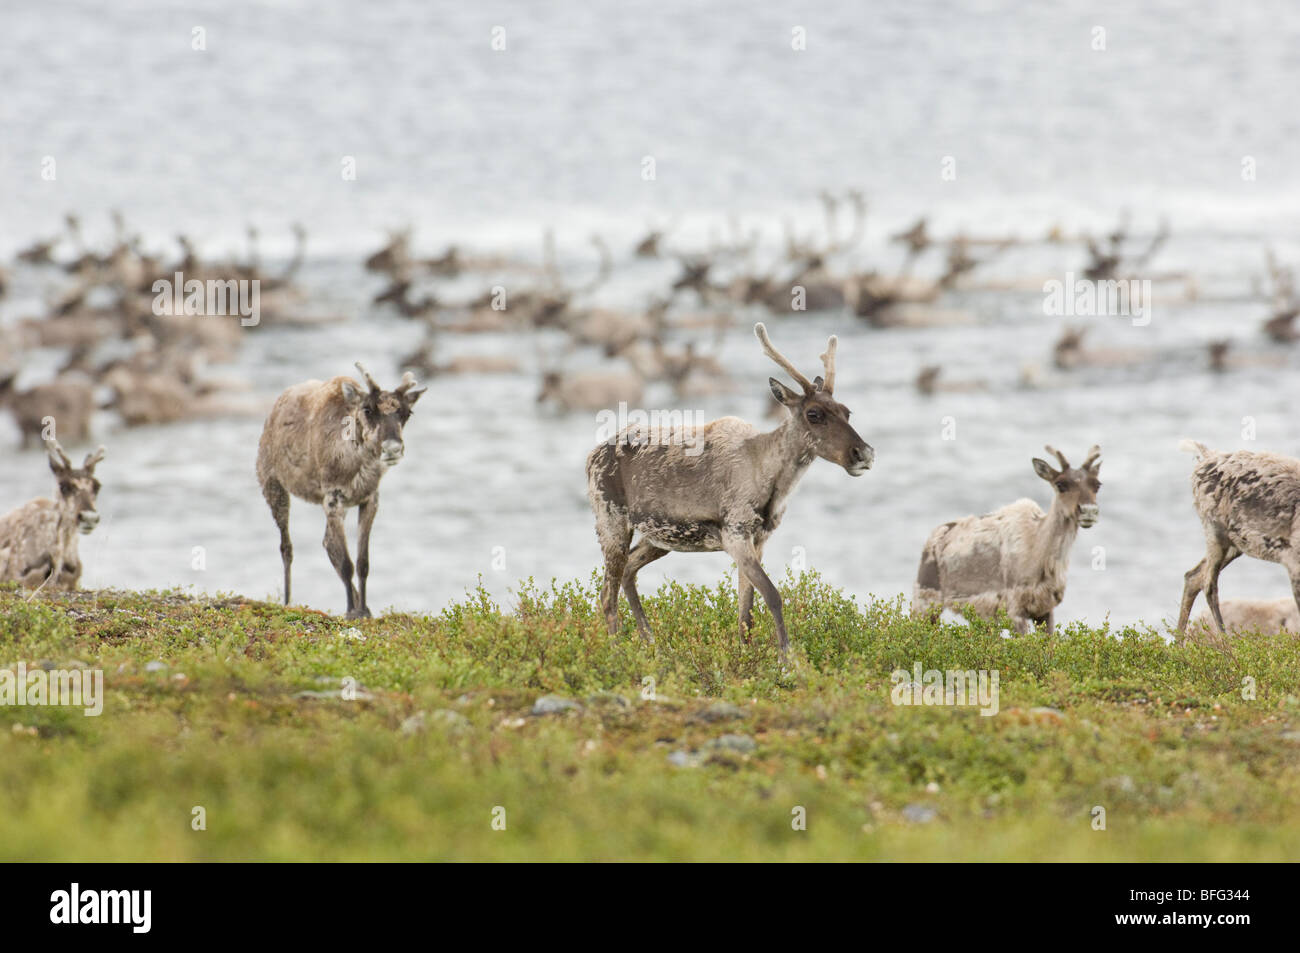 Le caribou de la toundra migration estivale, Rangifer tarandus groenlandicus. Au nord de Whitefish Lake, Territoires du Nord-Ouest, Canada Banque D'Images